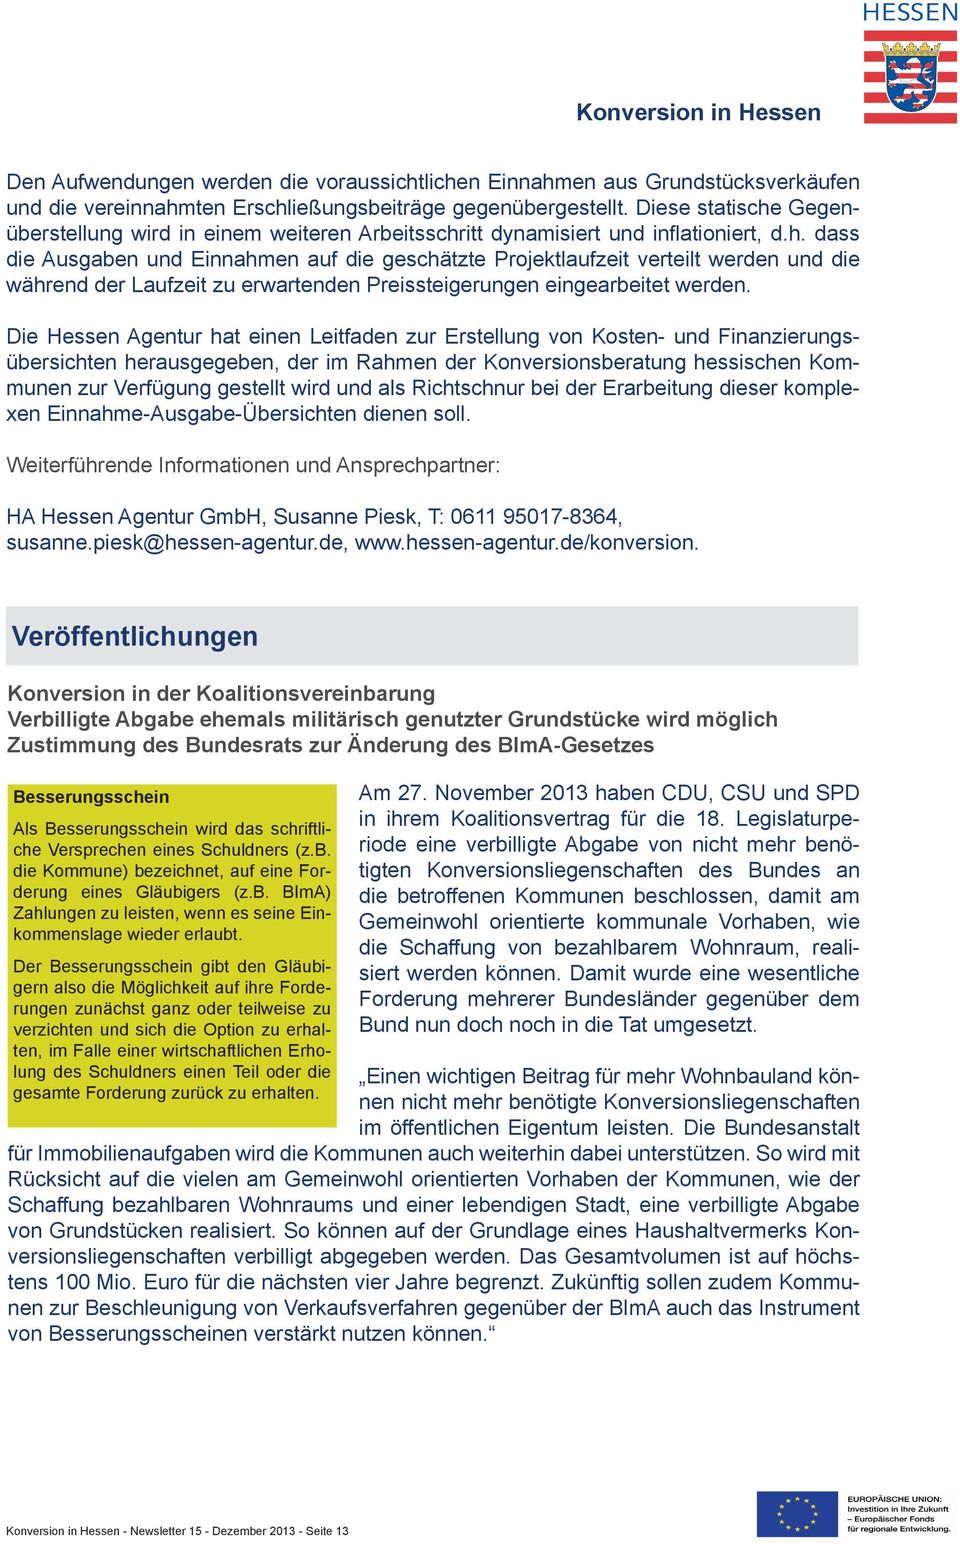 Die Hessen Agentur hat einen Leitfaden zur Erstellung von Kosten- und Finanzierungsübersichten herausgegeben, der im Rahmen der Konversionsberatung hessischen Kommunen zur Verfügung gestellt wird und